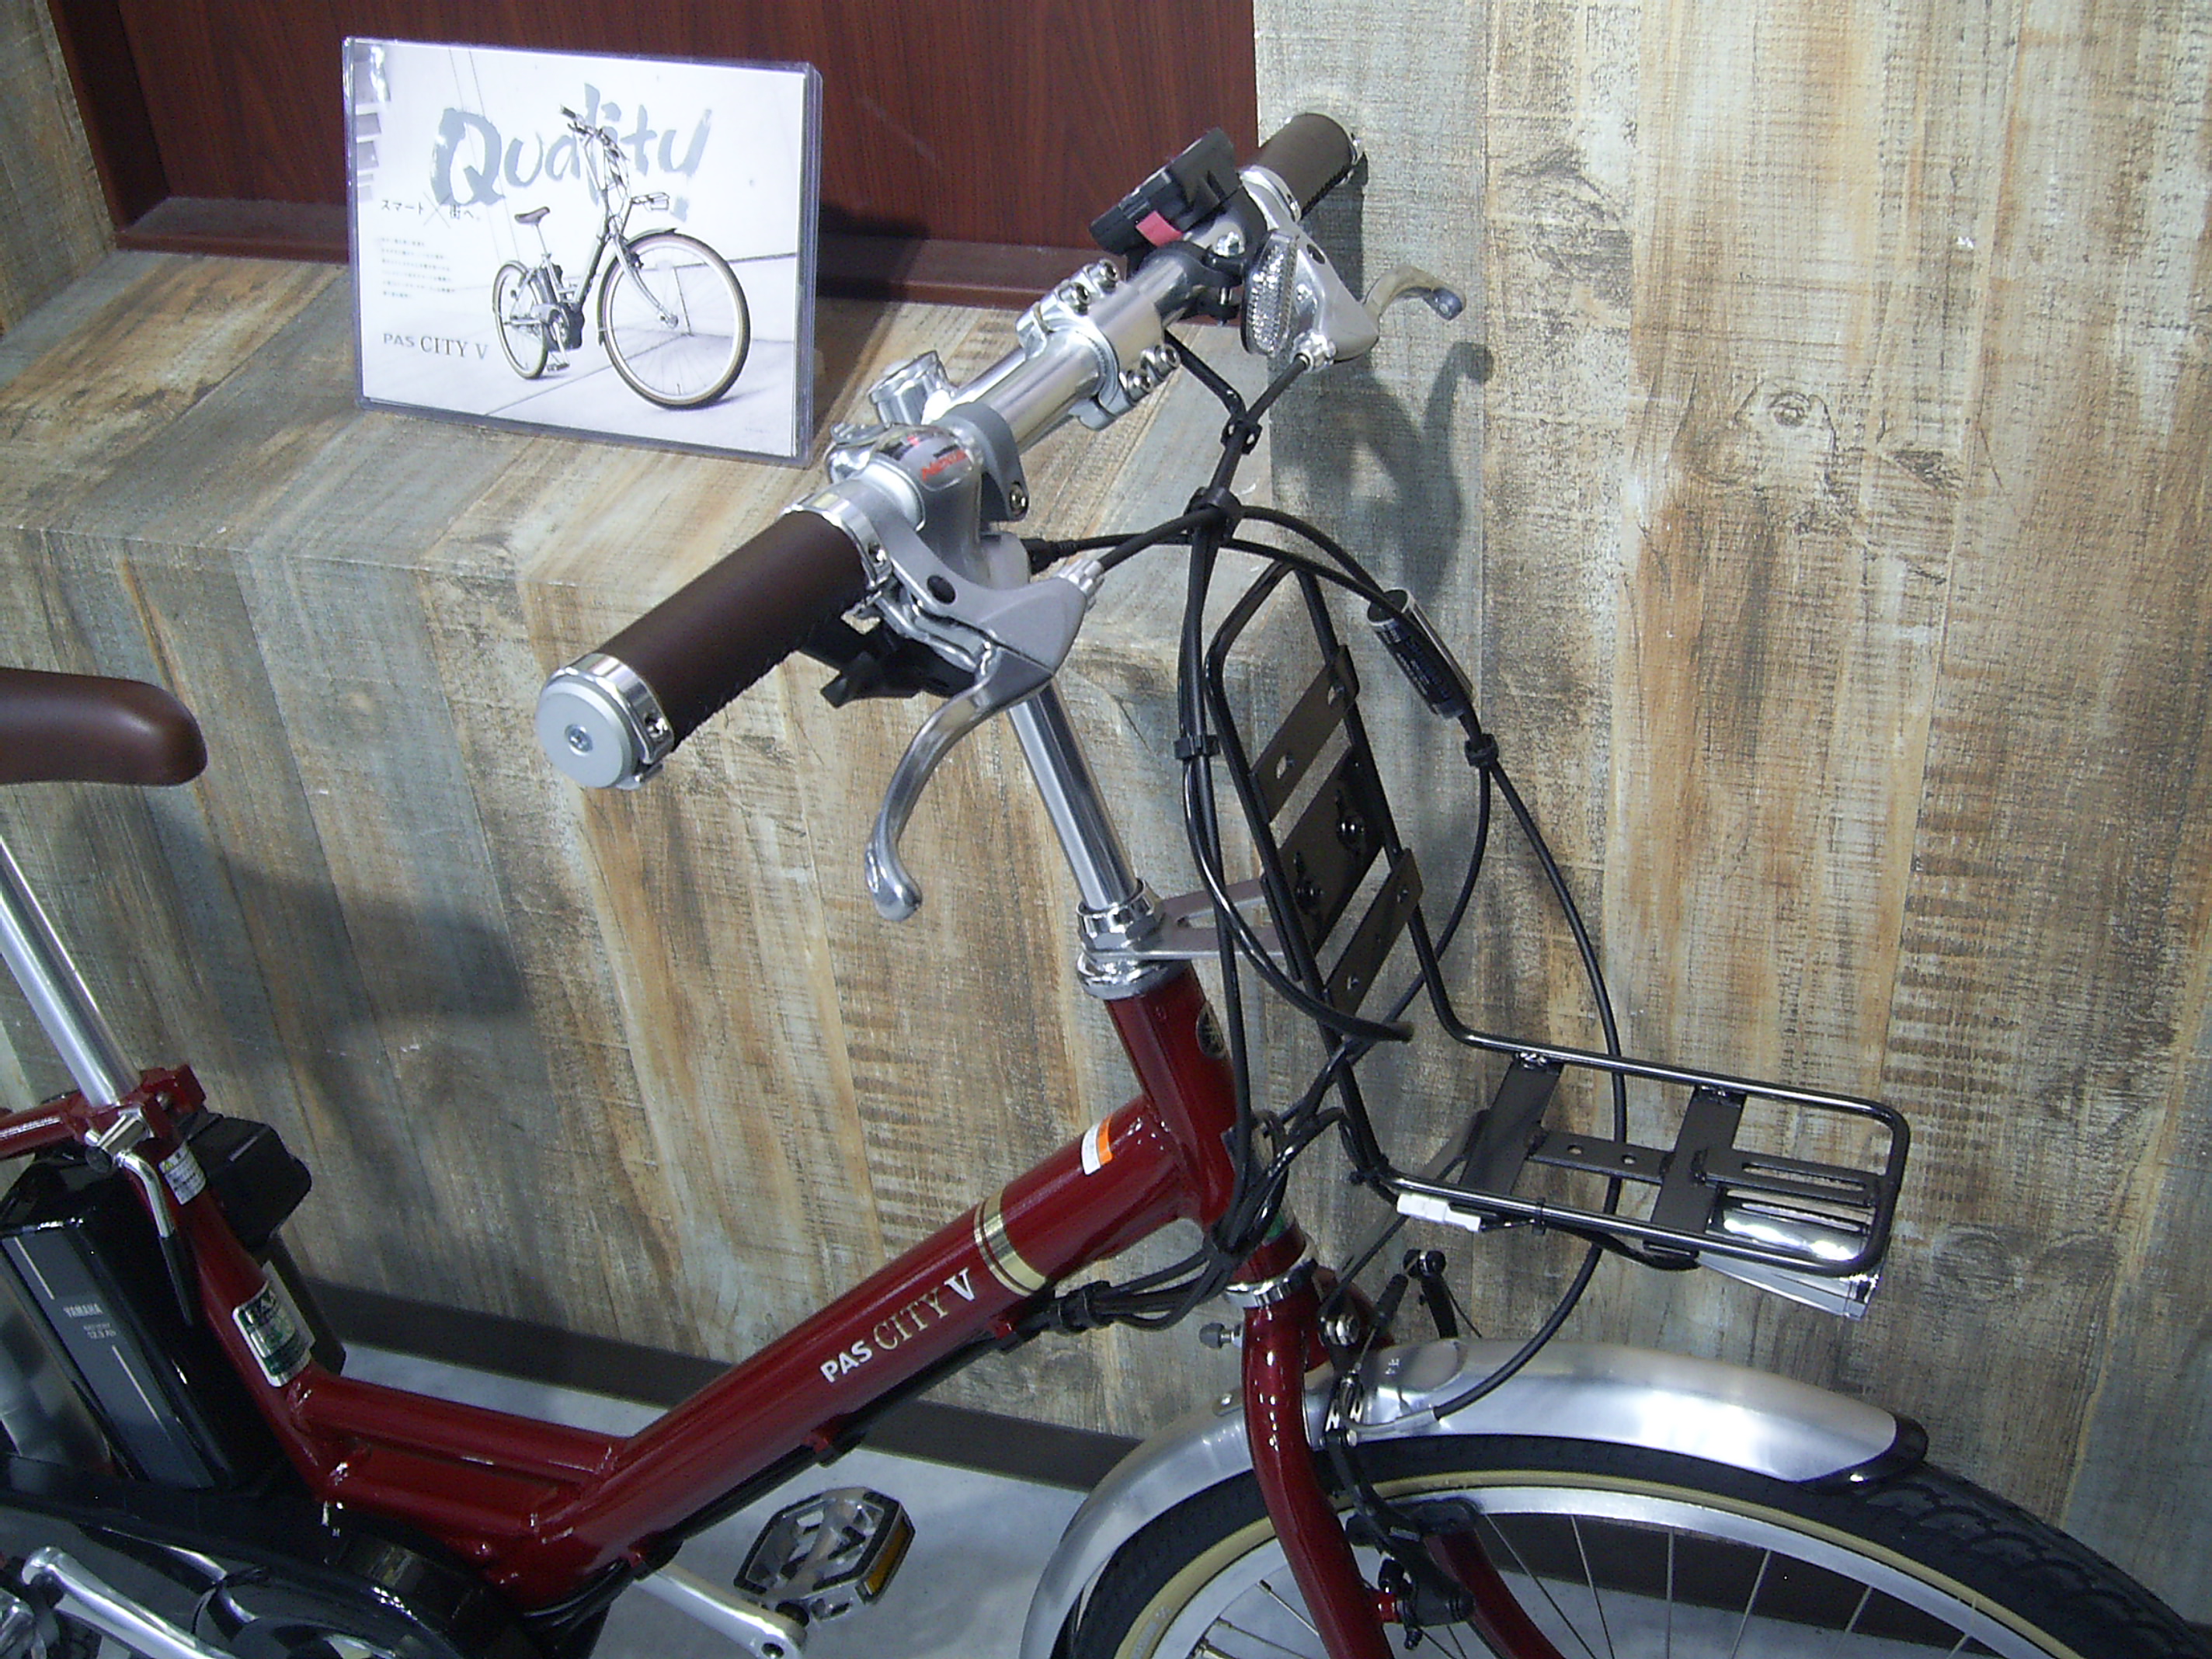 YAMAHA [ PAS City-V ] サイクルスポット&ル・サイク南大沢店 | 自転車